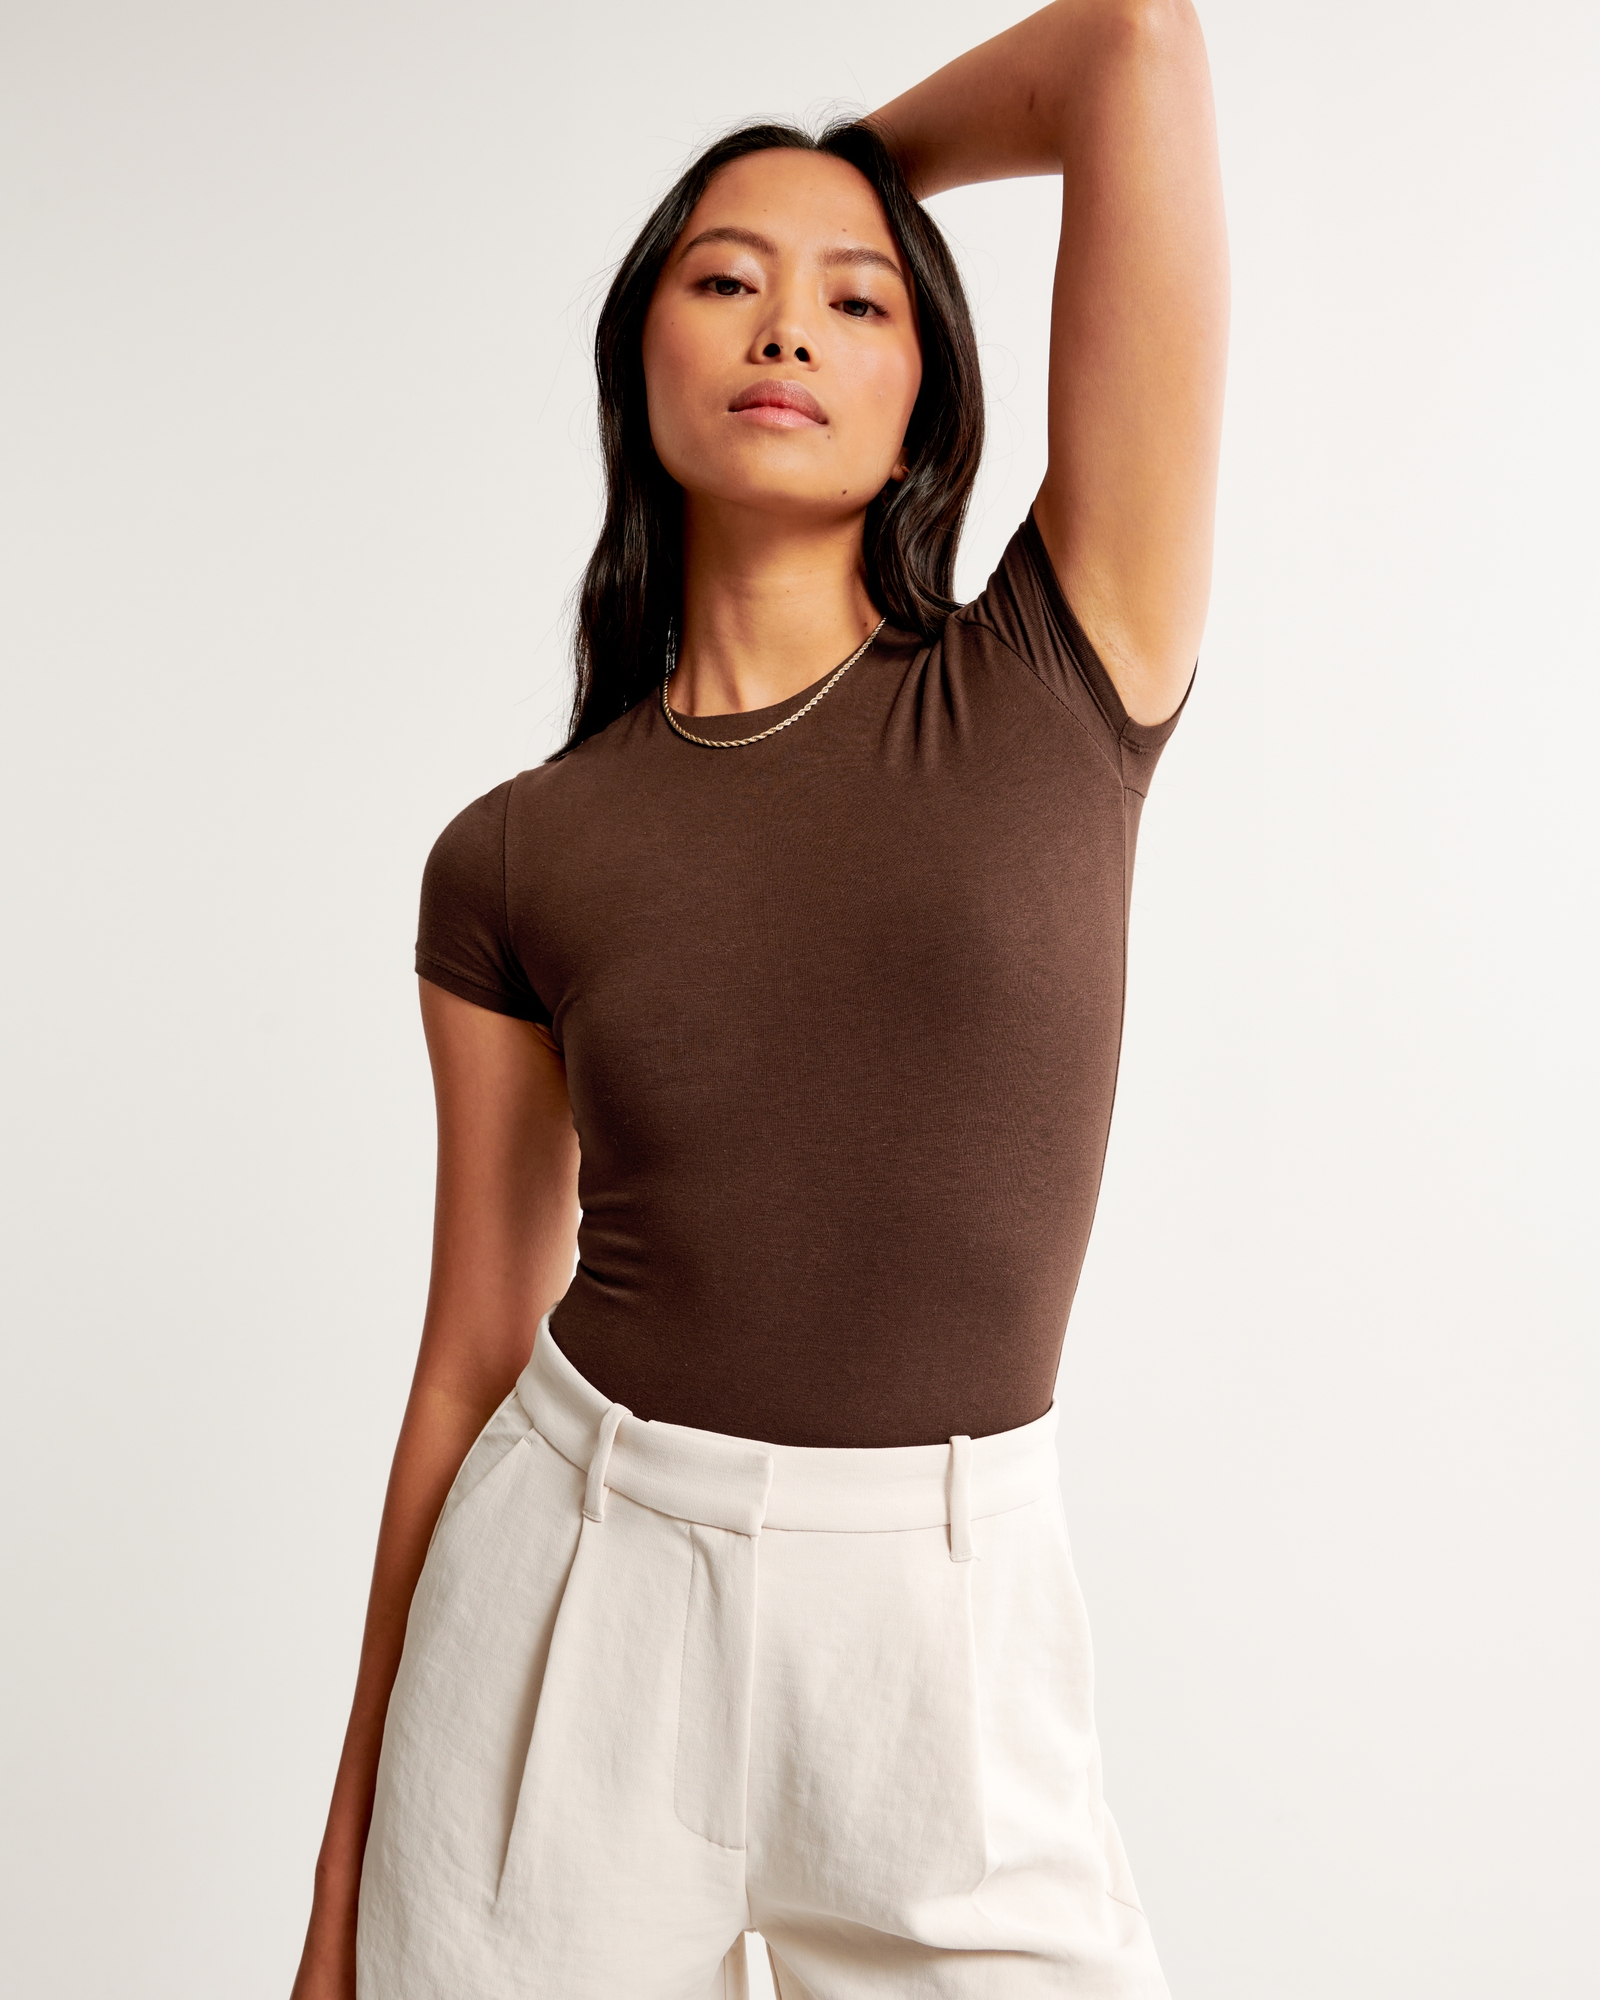 Women's Cotton-Blend Seamless Fabric Tee Bodysuit, Women's Tops